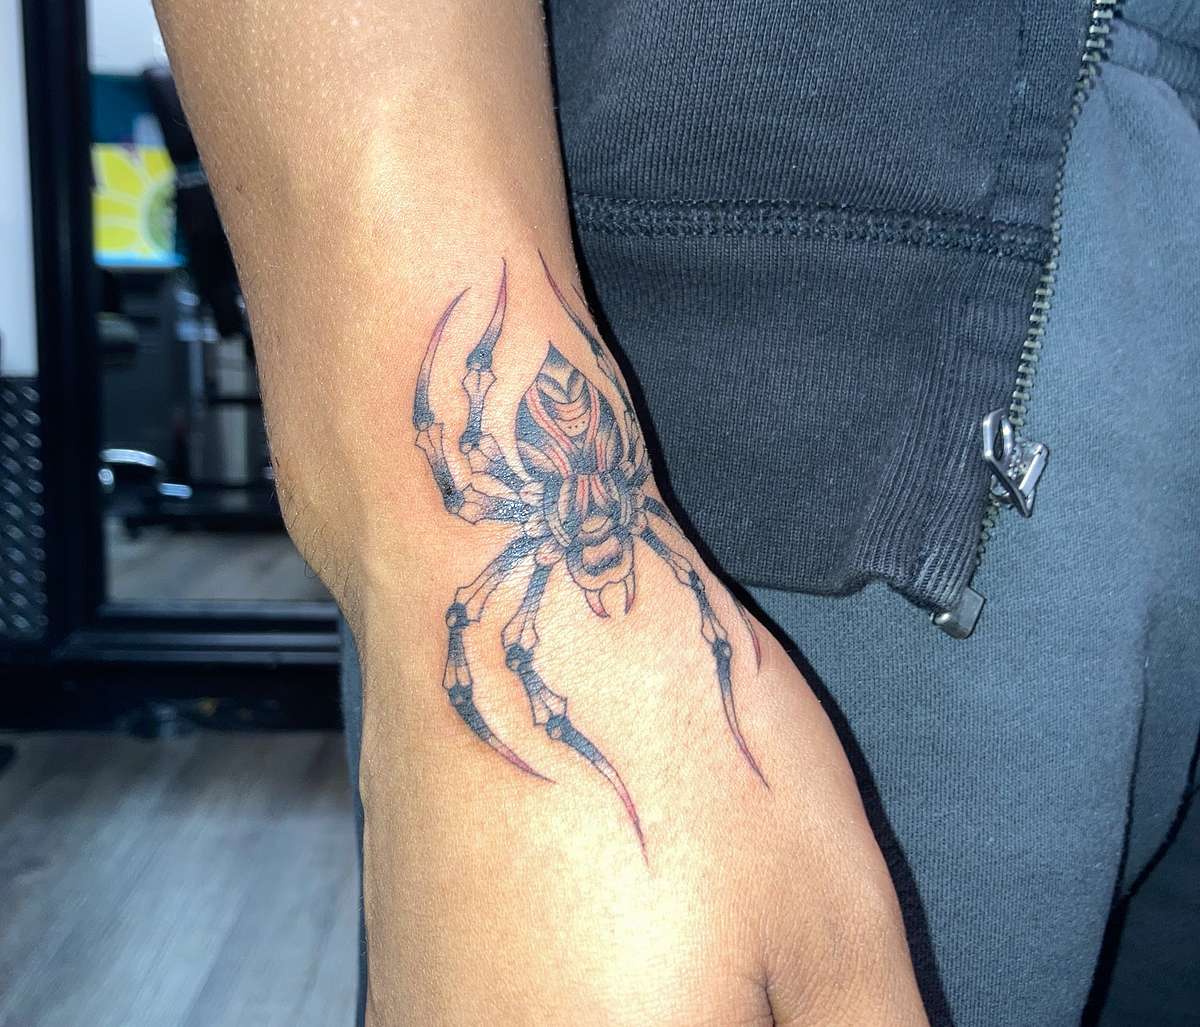 Black Widow Tattoo stamp